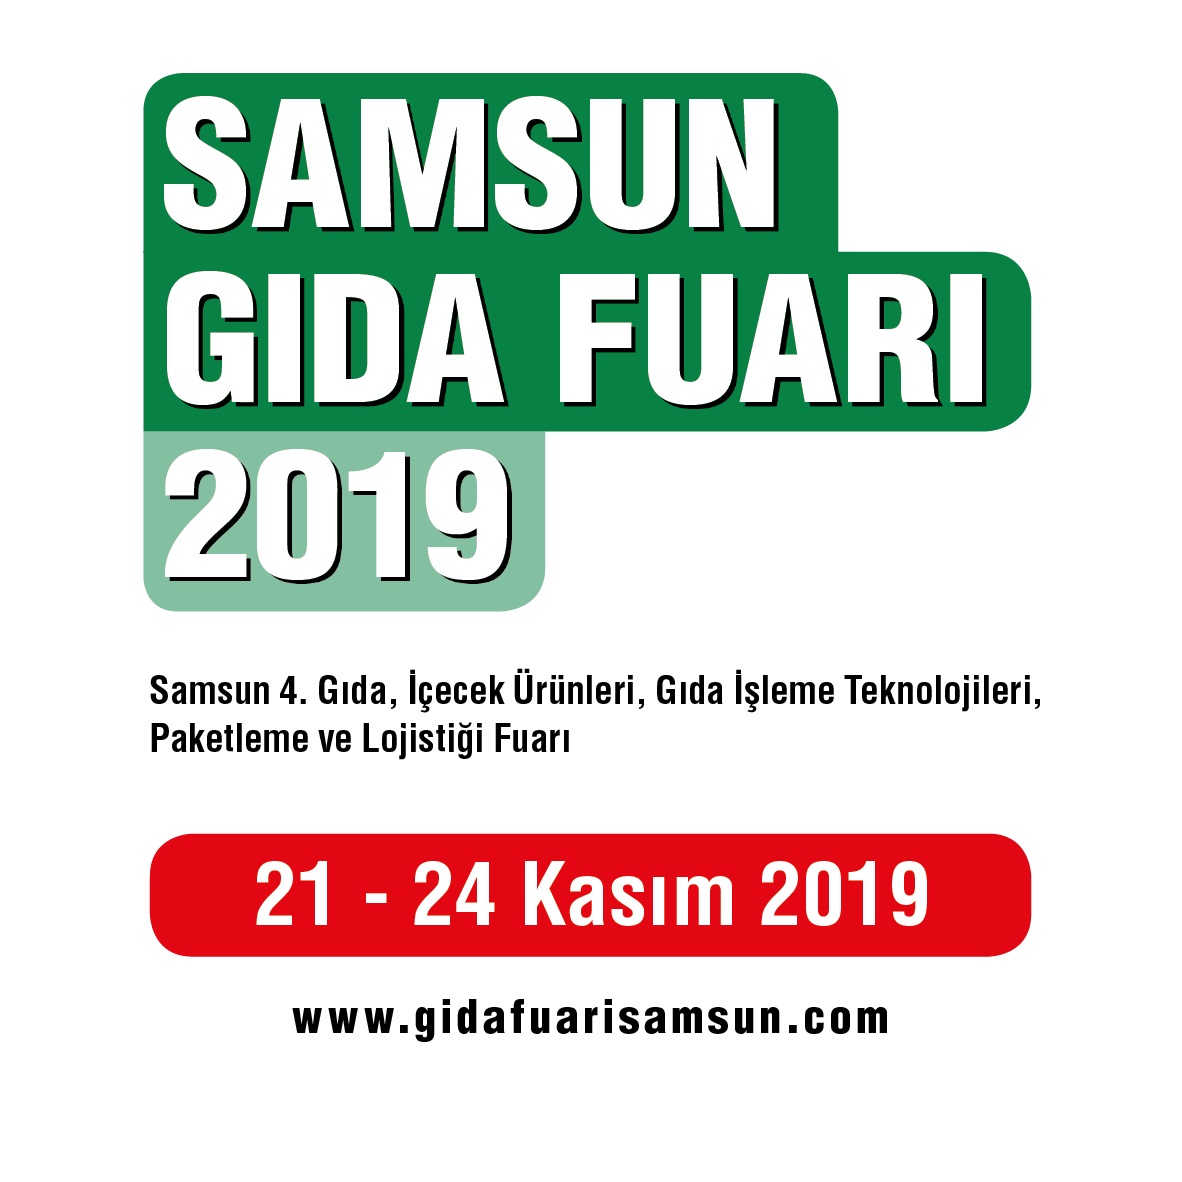 samsun-gida-logo-20195.jpg